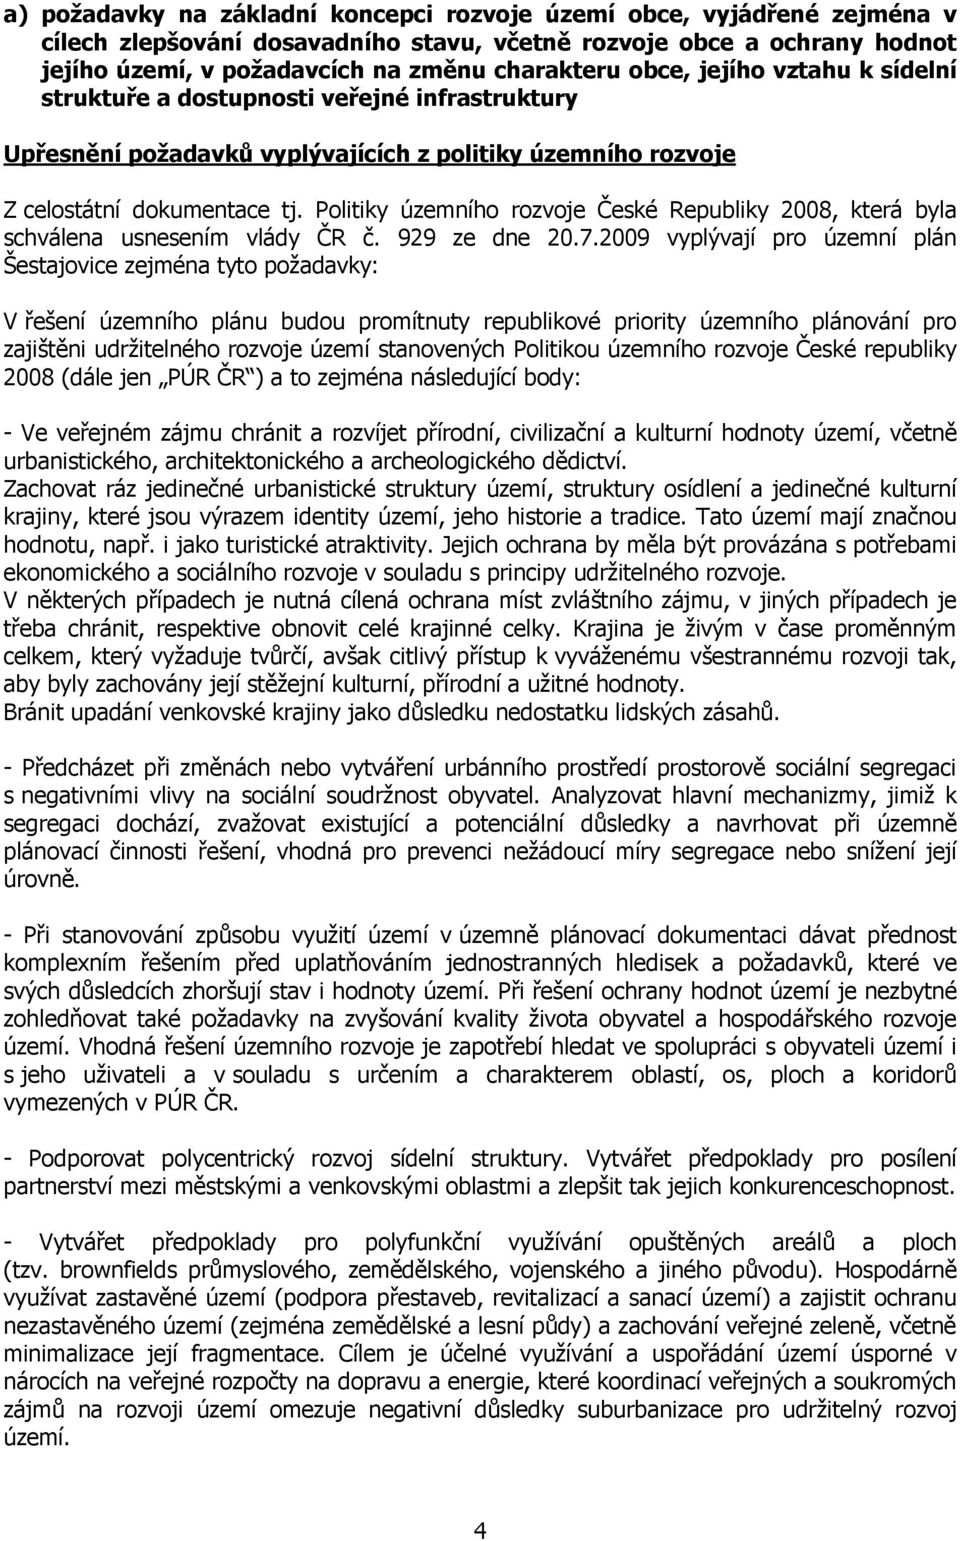 Politiky územního rozvoje České Republiky 2008, která byla schválena usnesením vlády ČR č. 929 ze dne 20.7.